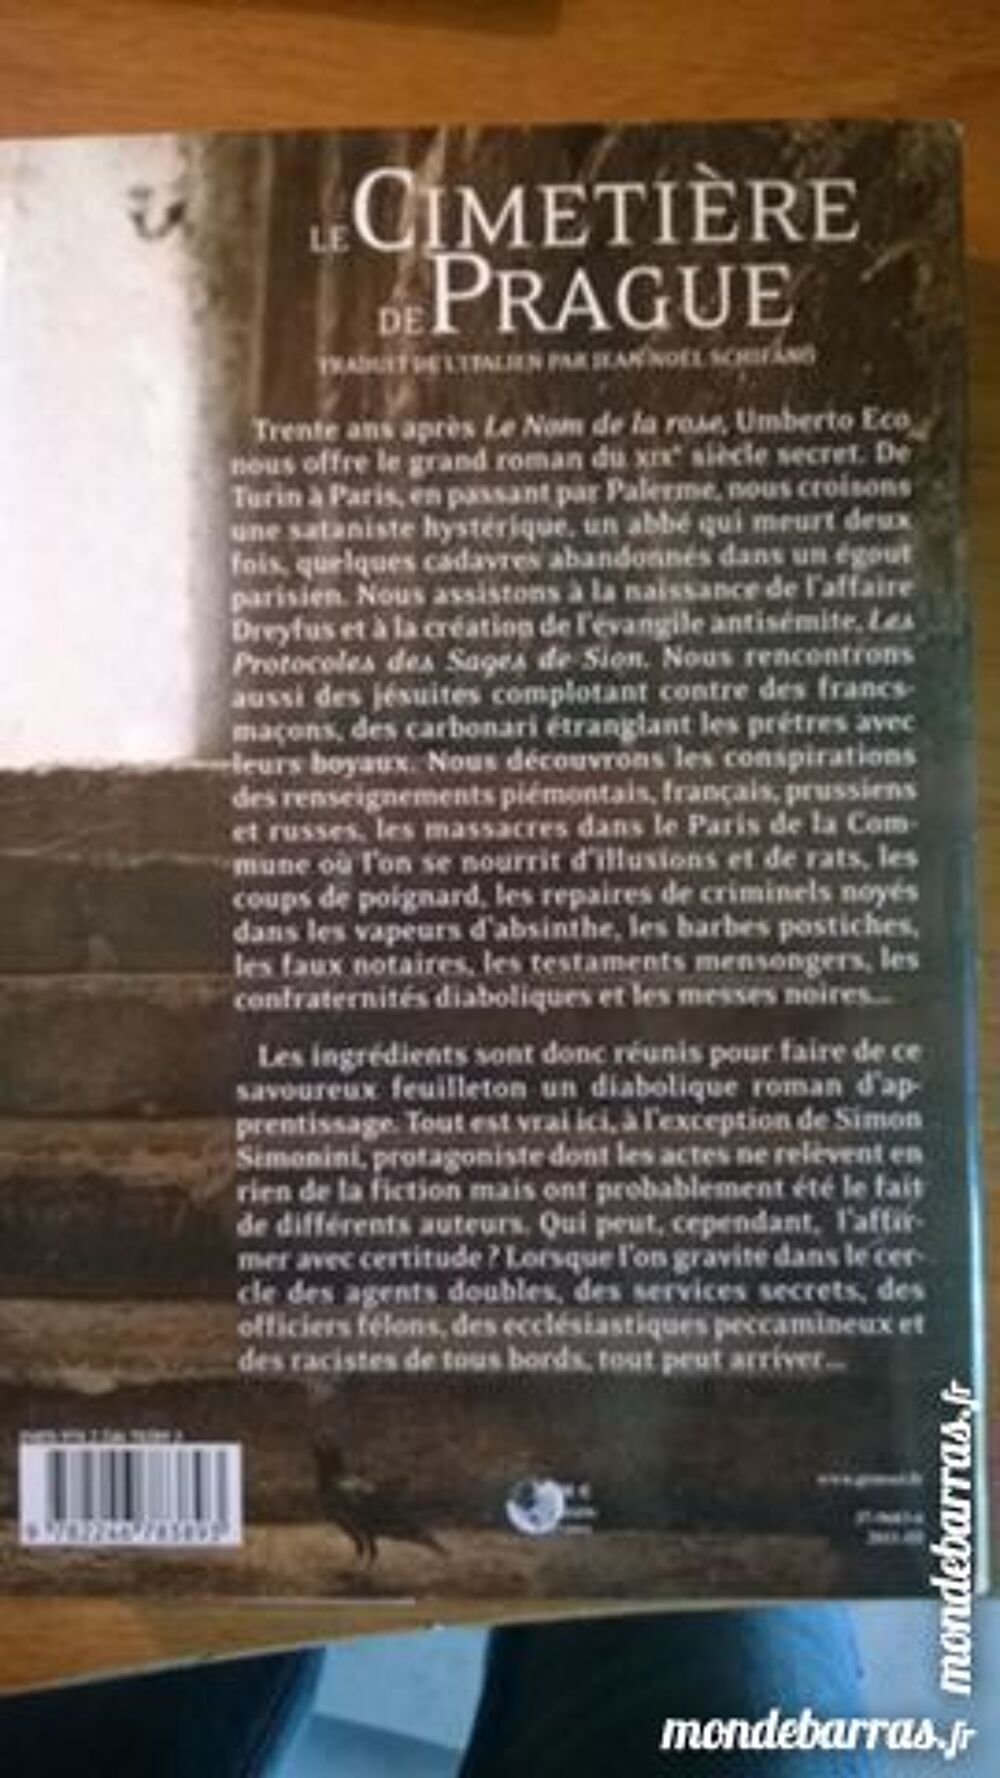 Le Cimetiere De Prague - Umberto Eco Livres et BD